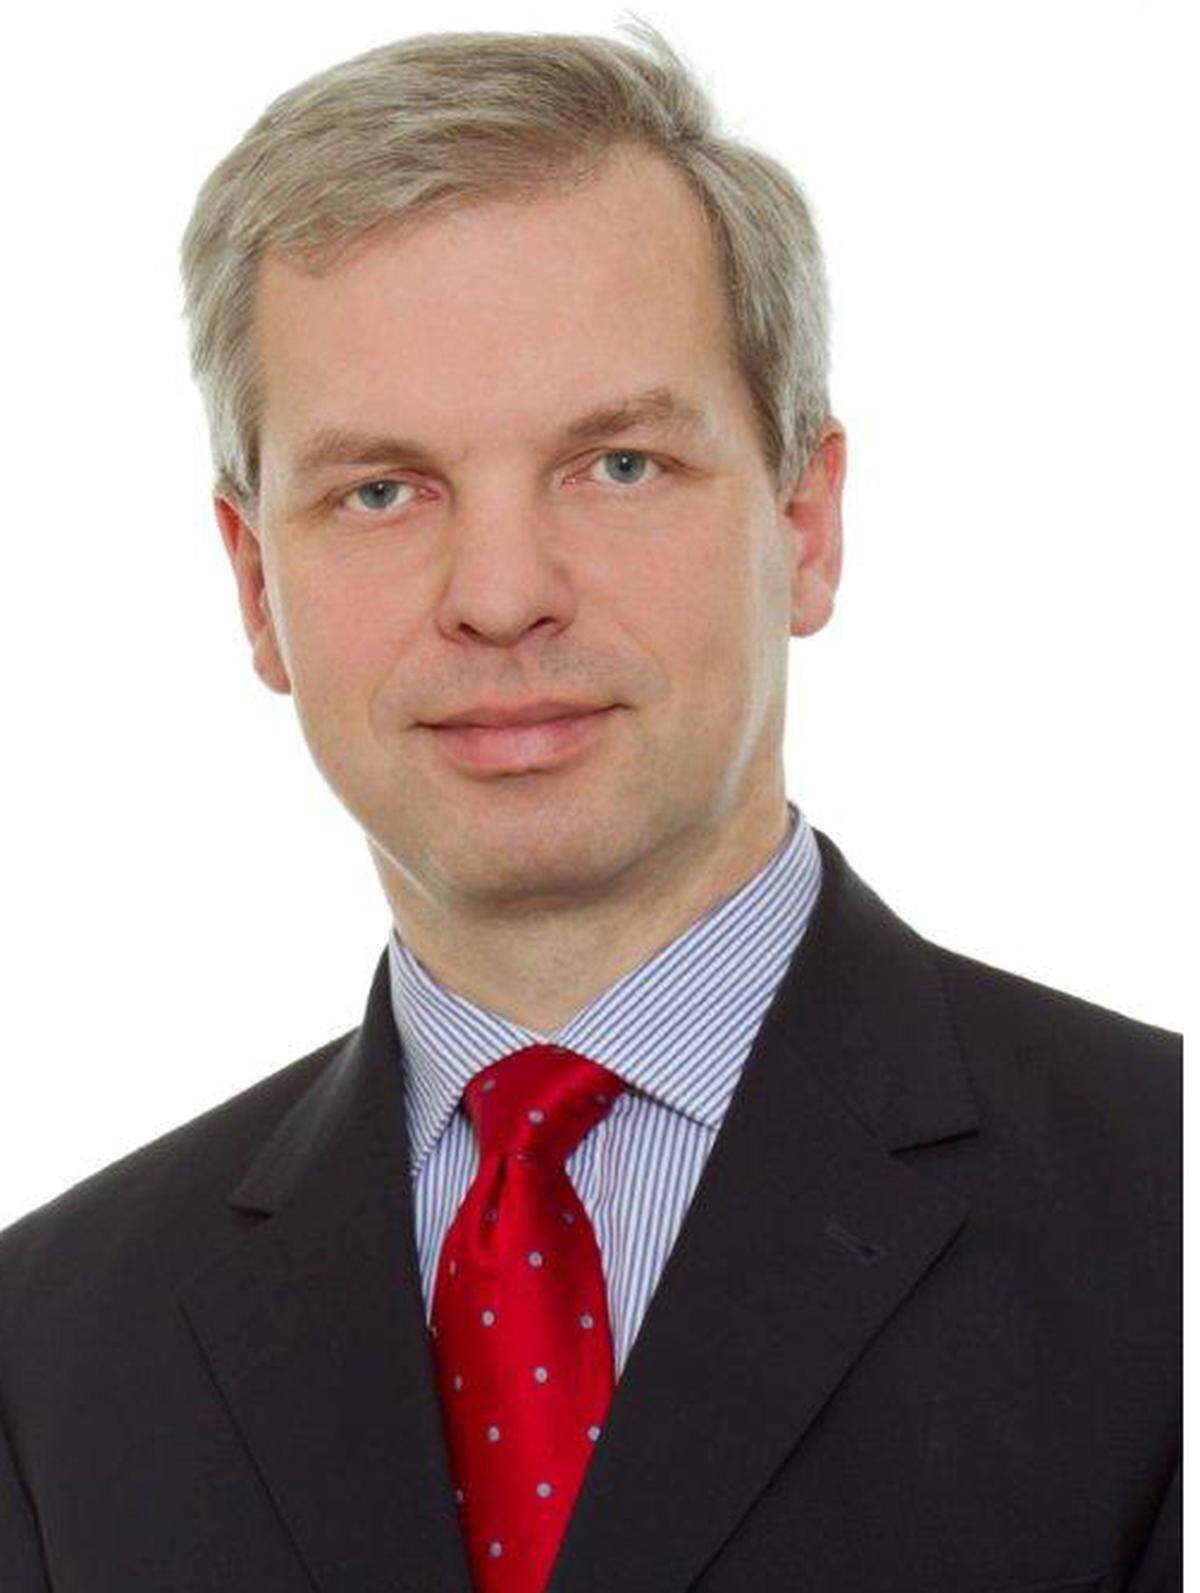 Georg Röhsner (51) wurde im Jänner 2013 zum neuen Managing Partner von Eversheds in Österreich bestellt. Er folgt in dieser Position Alexander Stolitzka (49), der seine Agenden nach zwei Jahren turnusmäßig übergab. Röhsner ist seit 1993 als Partner in der Kanzlei tätig. Er ist auf Wohn- und Immobilienrecht sowie auf IT-, Medien- und Datenschutzrecht spezialisiert.